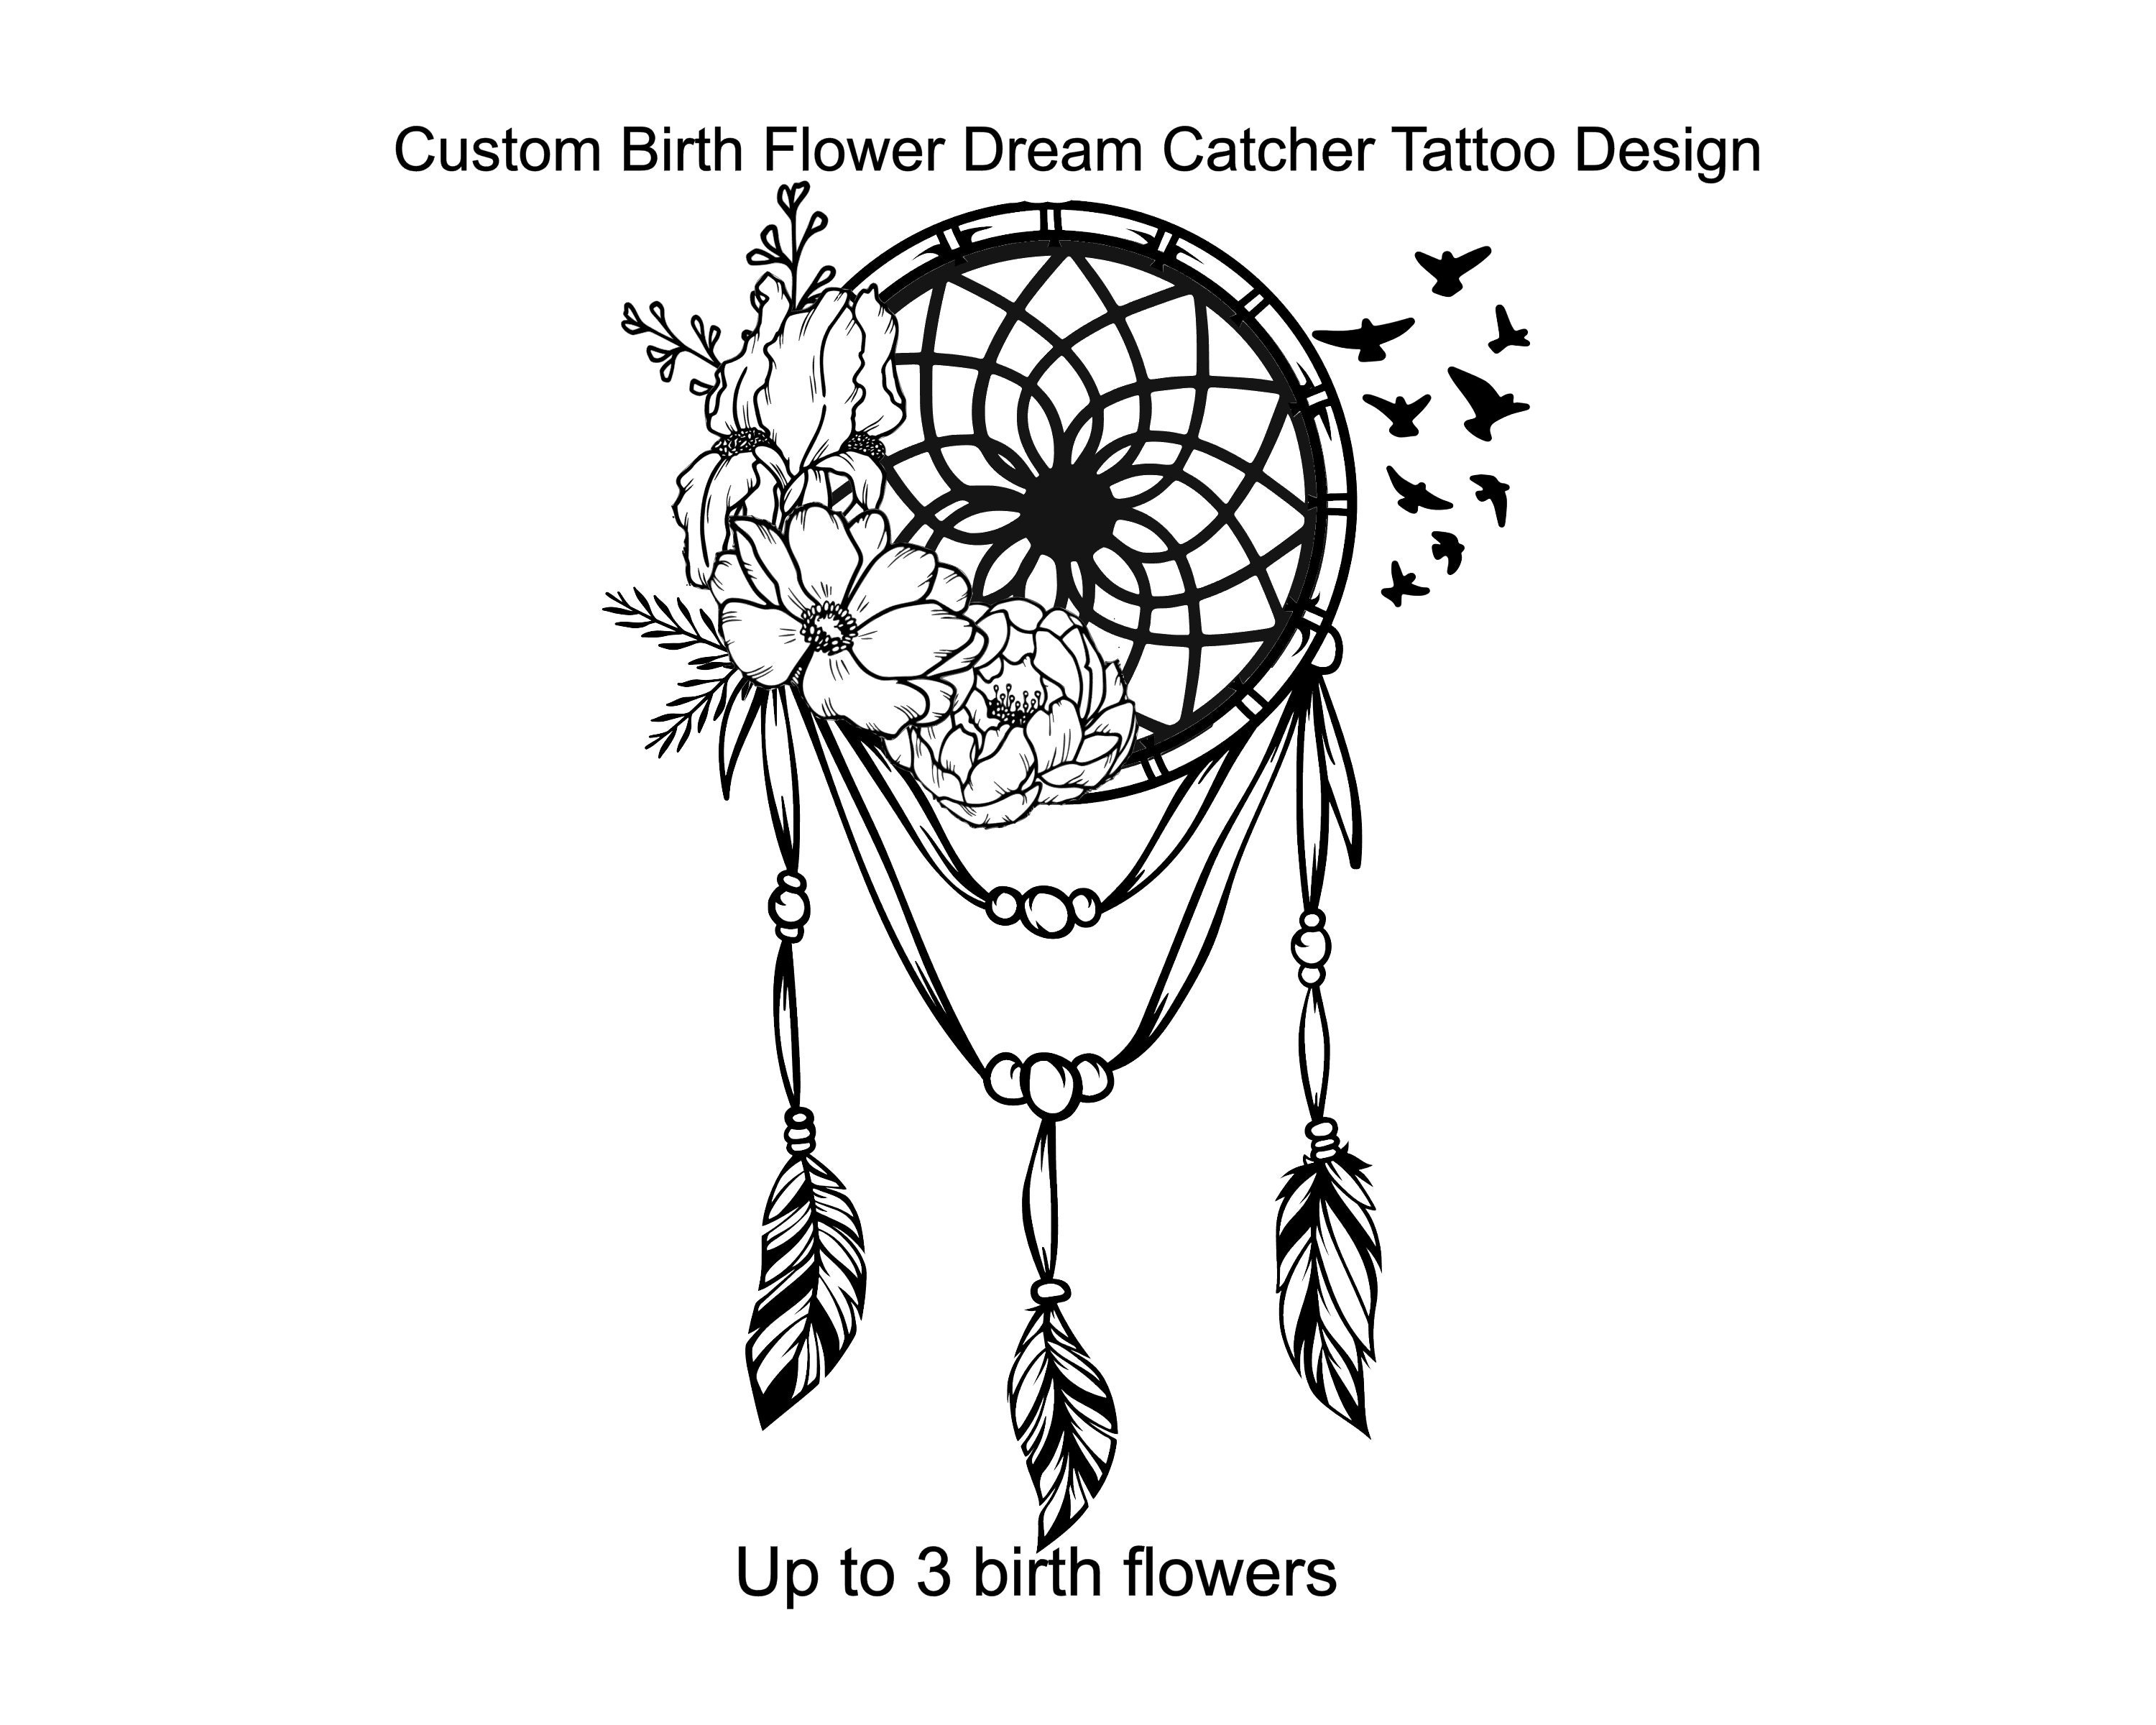 1. Dreamcatcher Tattoo Designs - wide 5